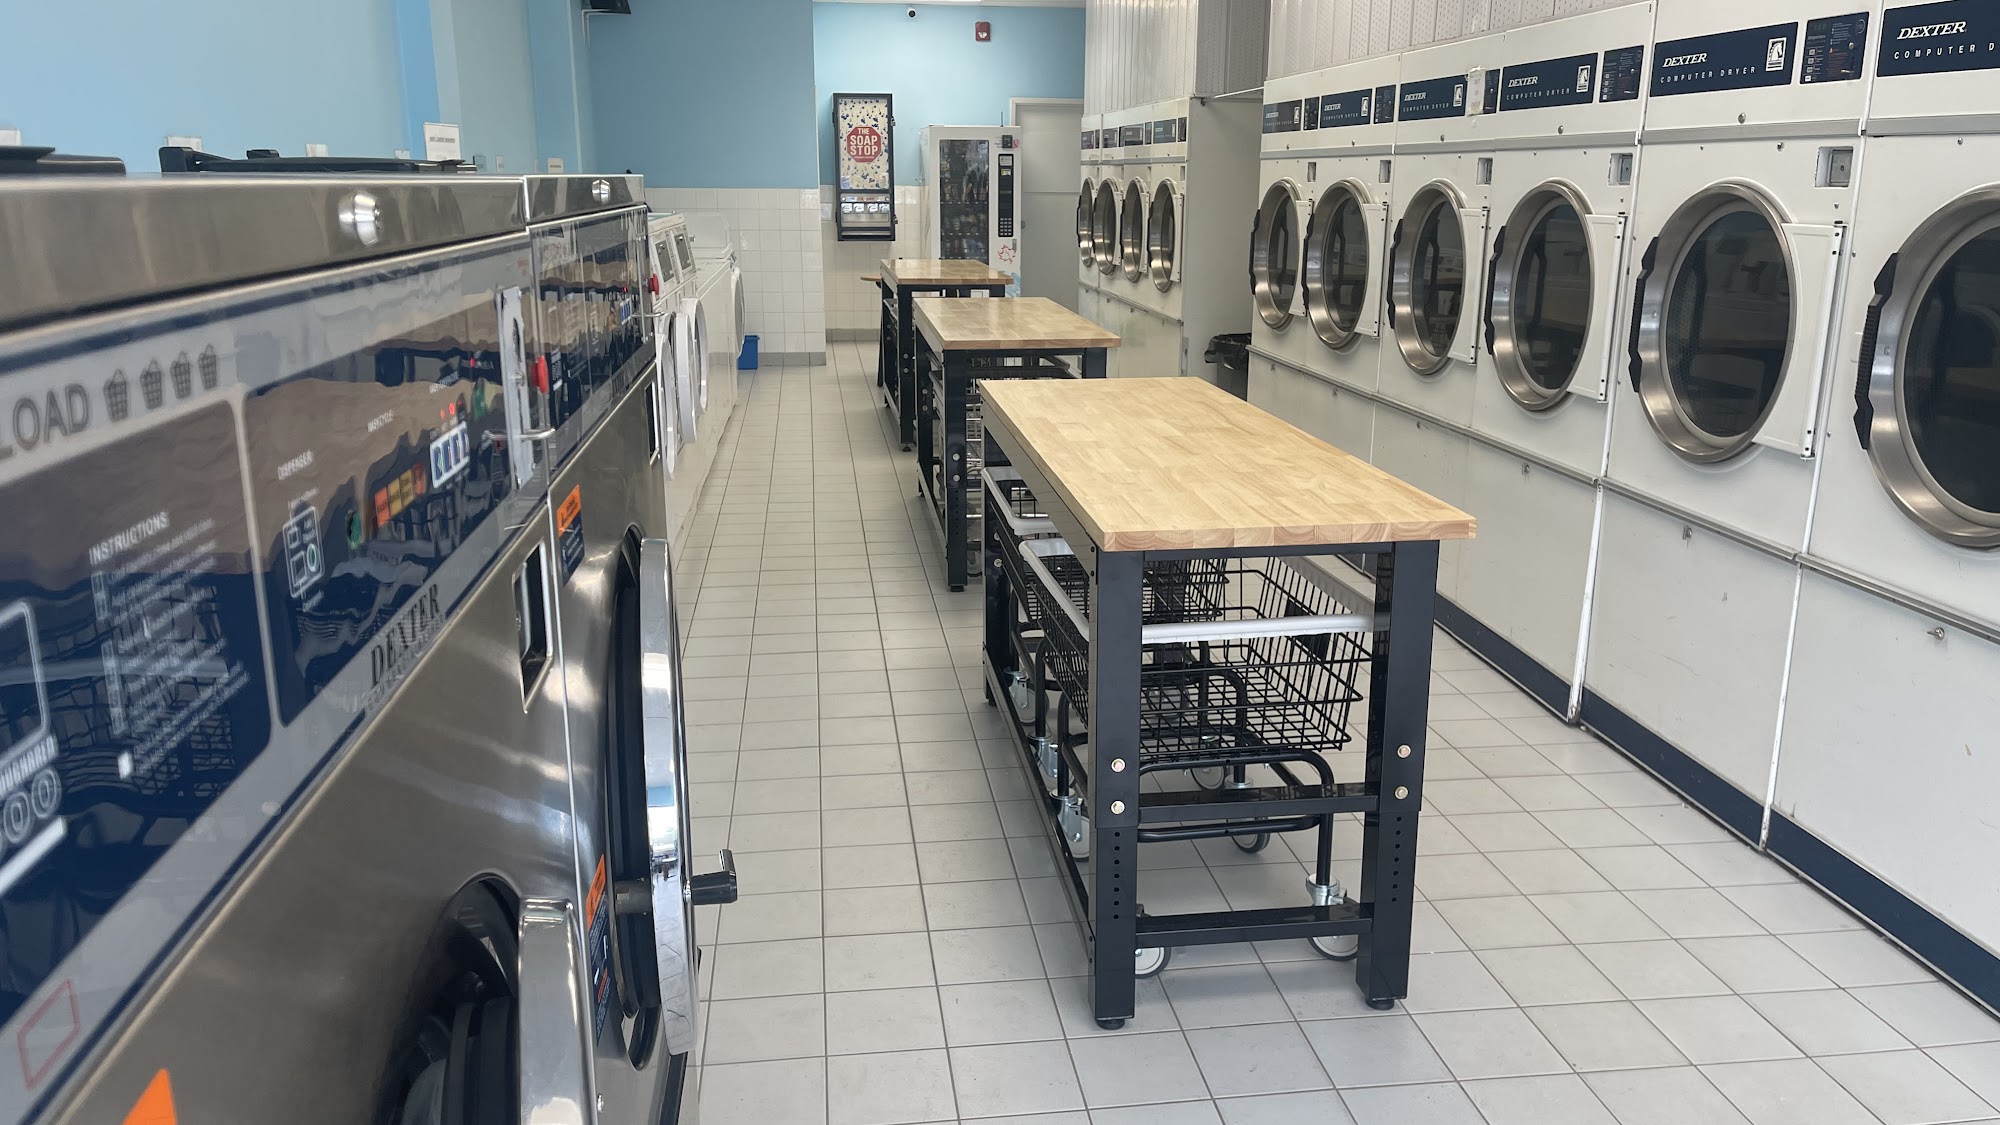 Laundry Station - Laundromat